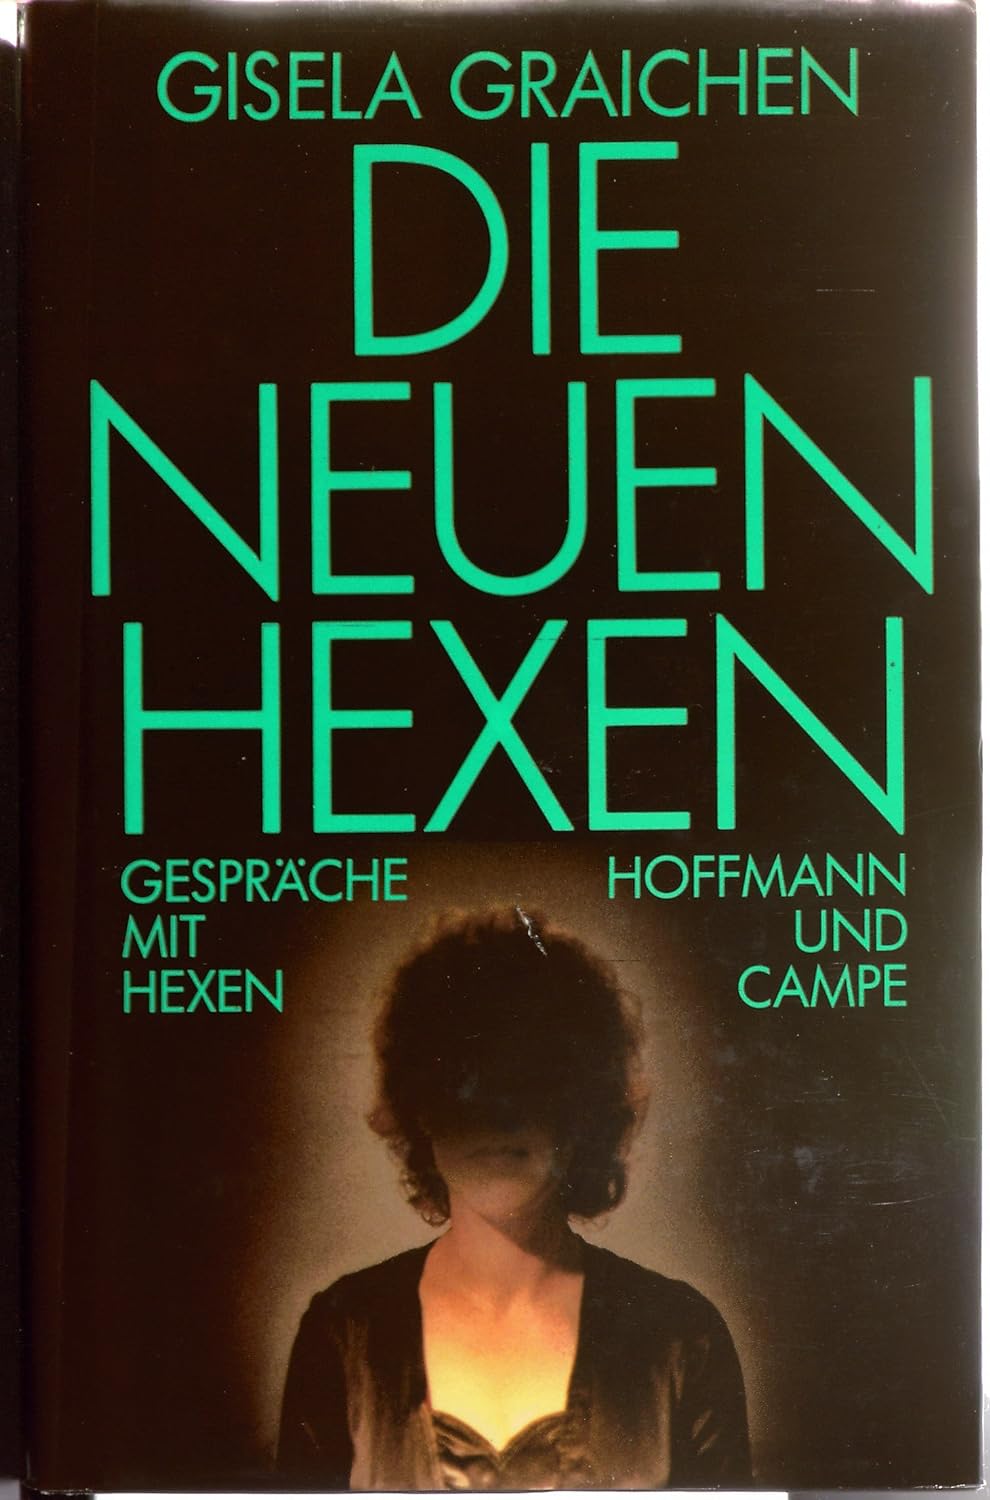 Gisela Graichen: Die neuen Hexen (German language, 1986, Hoffmann und Campe)